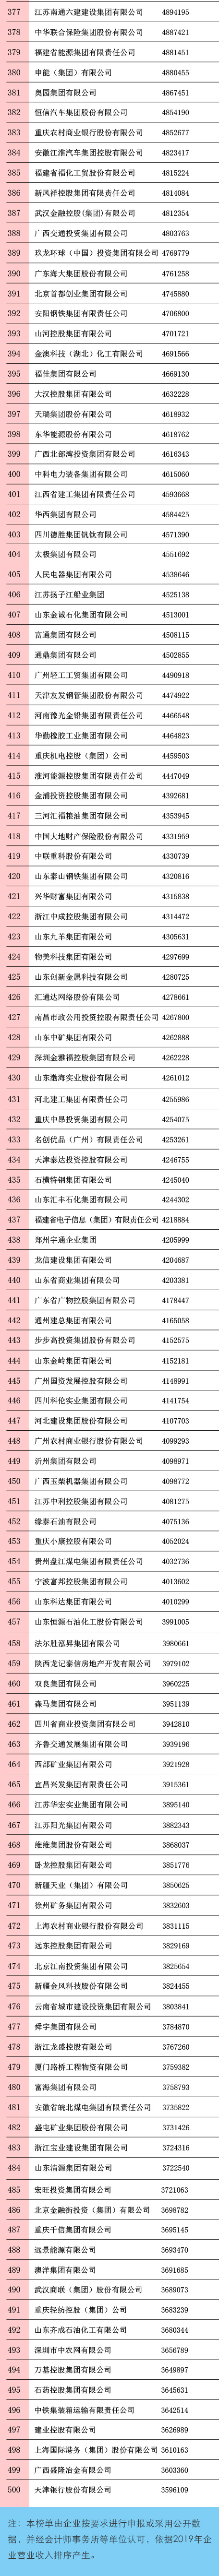 刚刚，2020中国企业500强榜单揭晓！